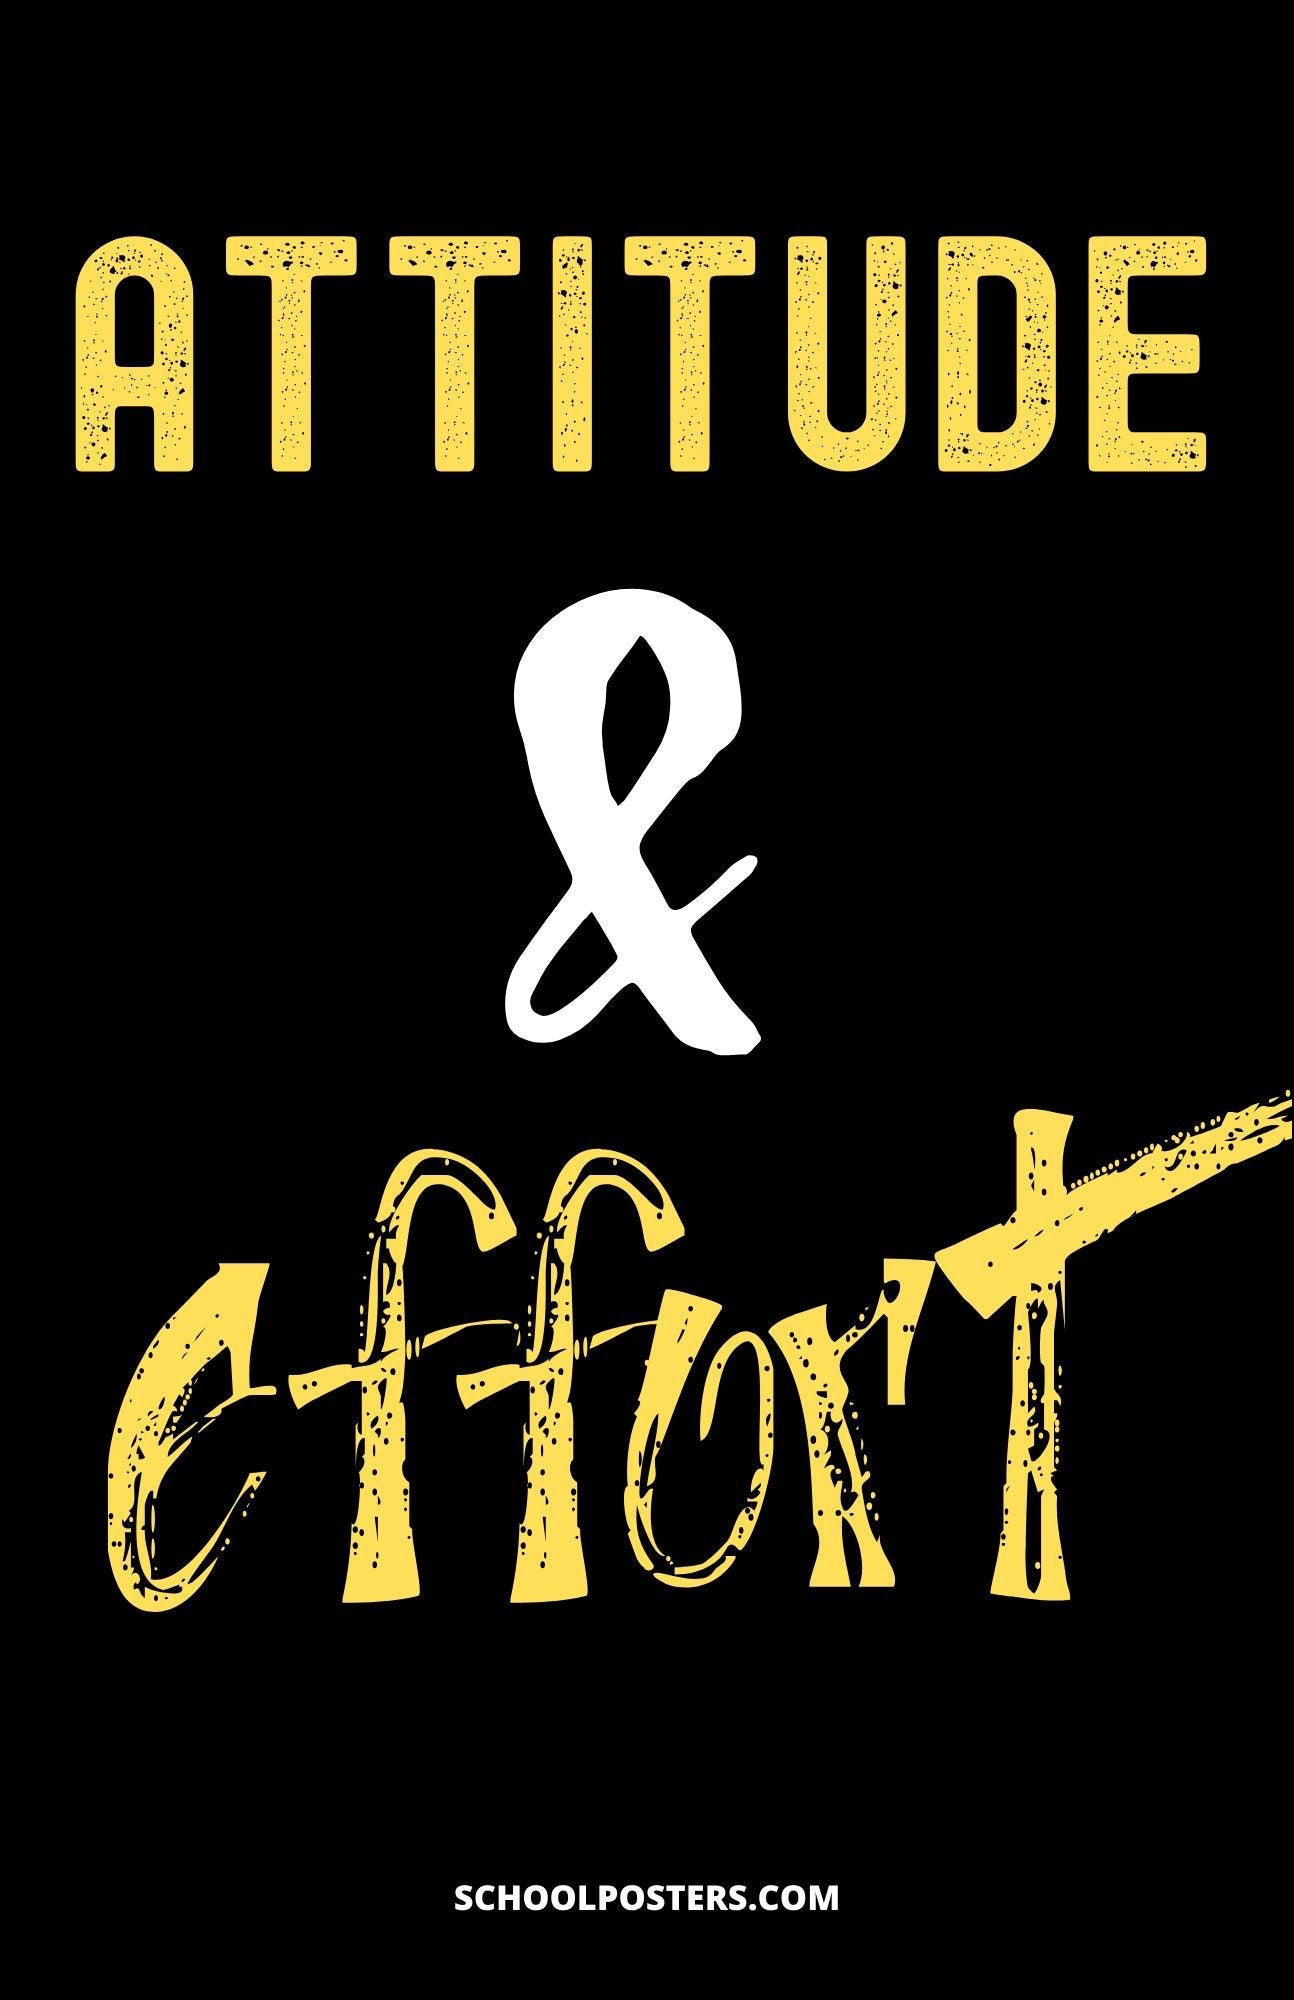 Attitude & Effort Poster